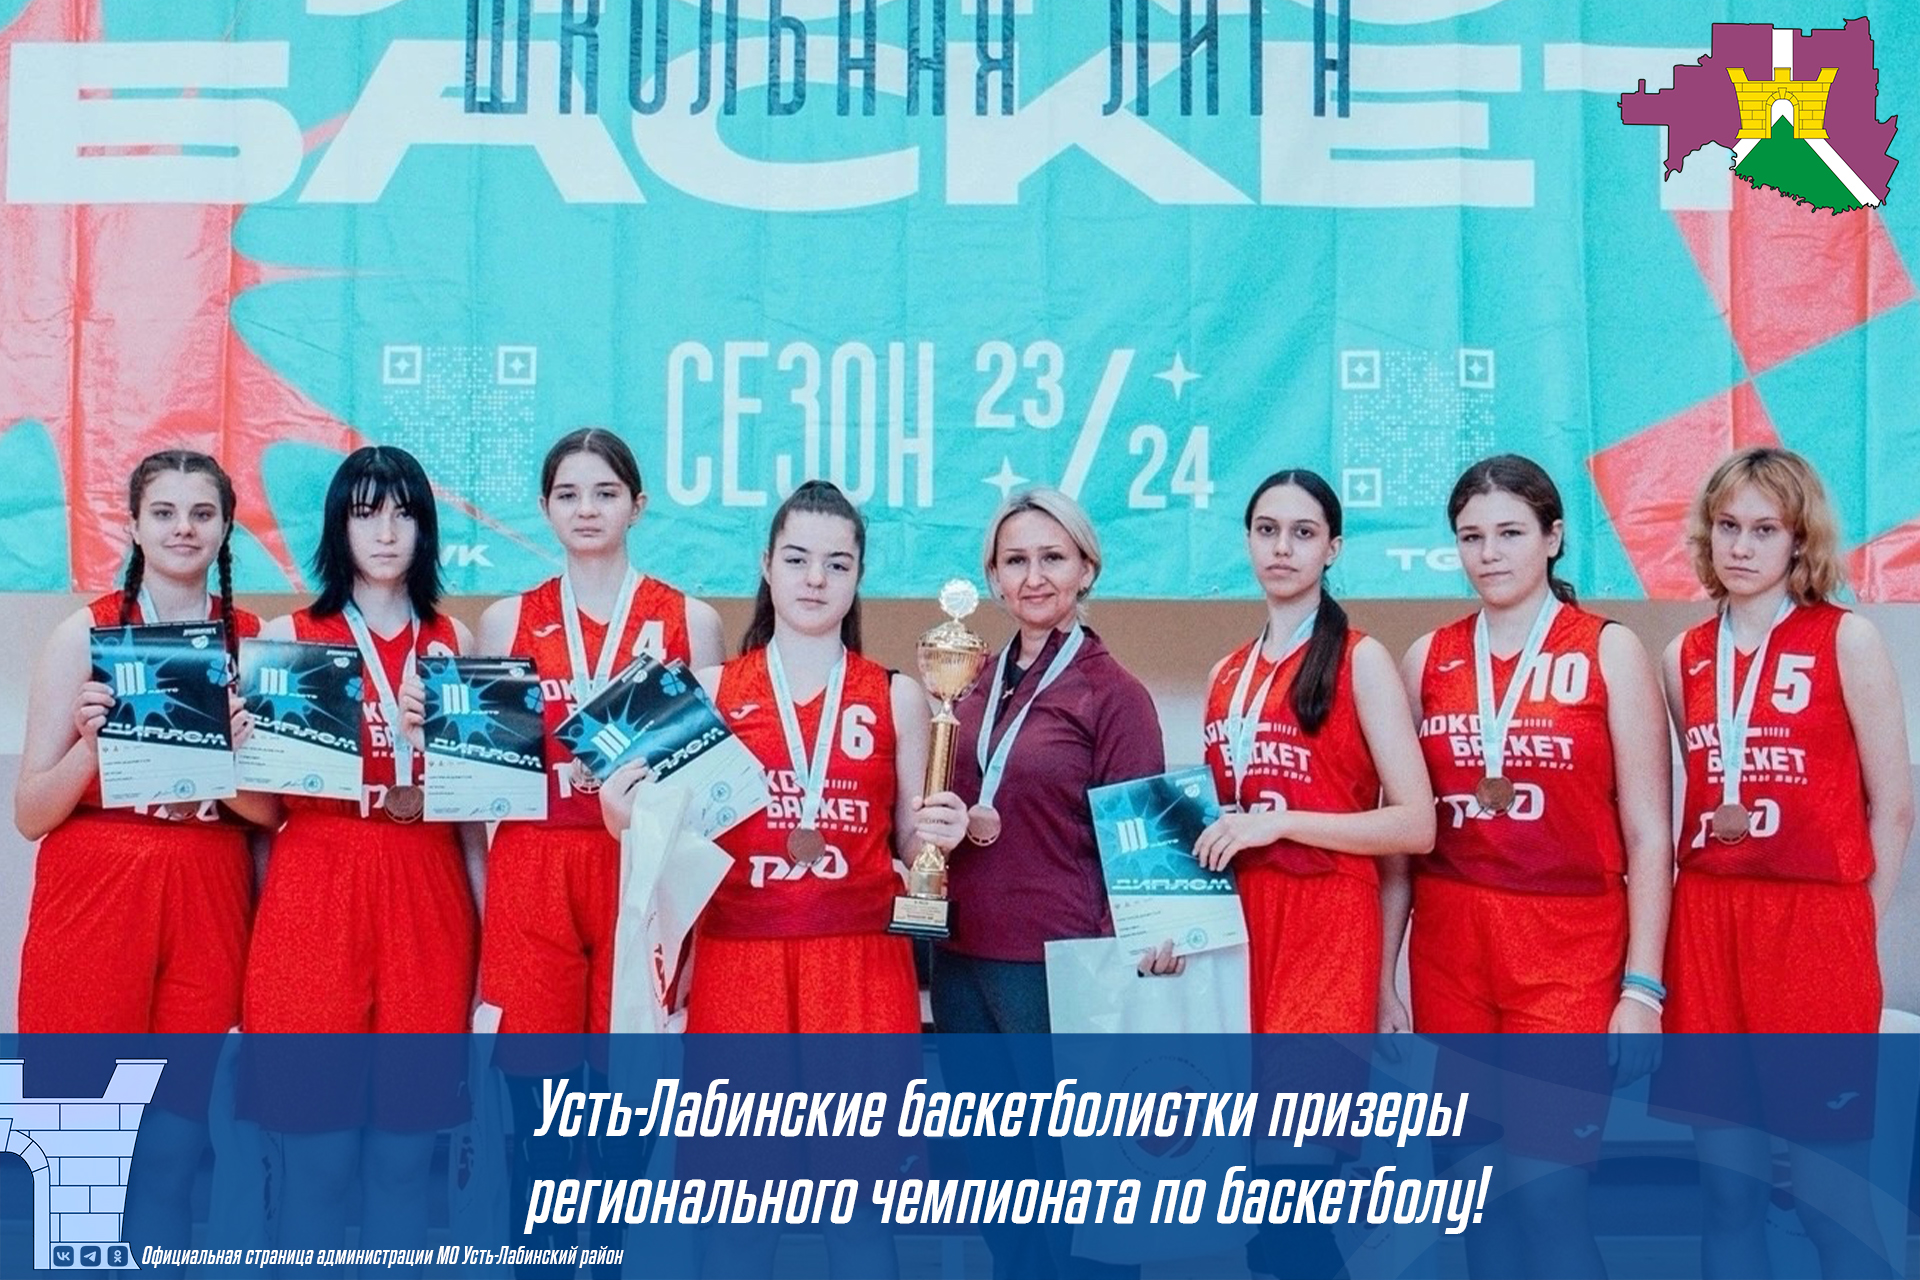 Усть-Лабинские баскетболистки призеры регионального чемпионата по баскетболу!